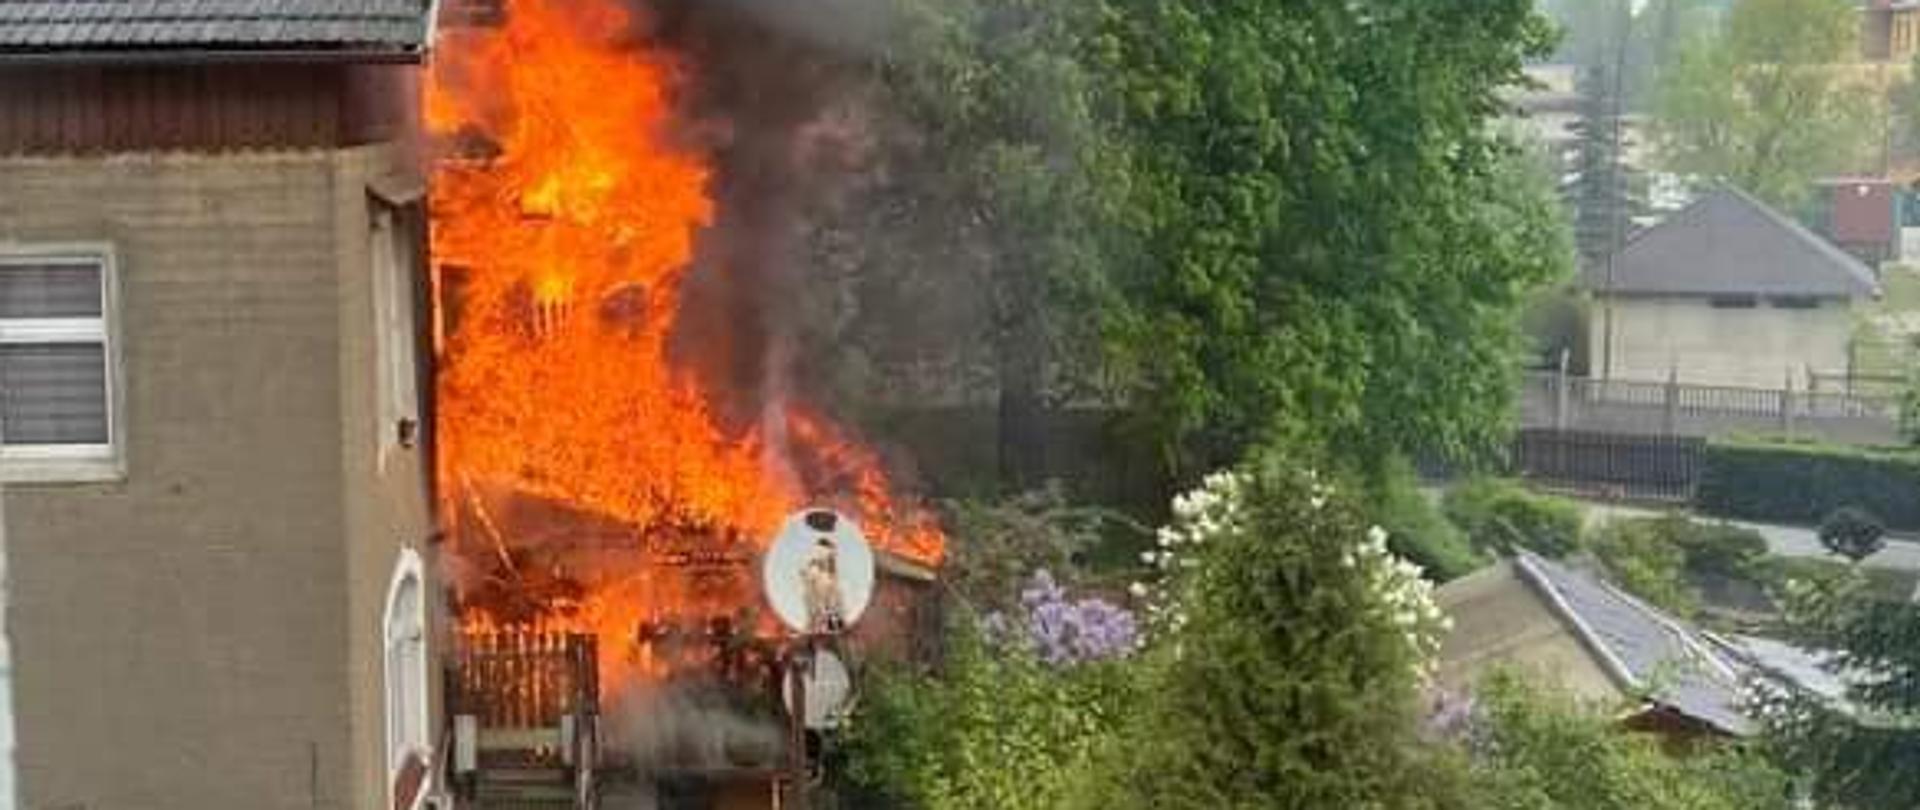 Zdjęcie przedstawia pożar budynku mieszkalnego - pali się drewniana weranda. Płomienie obejmują całą drewnianą werandę budynku. Kłęby czarnego dymu unoszą się nad miejscem pożaru.